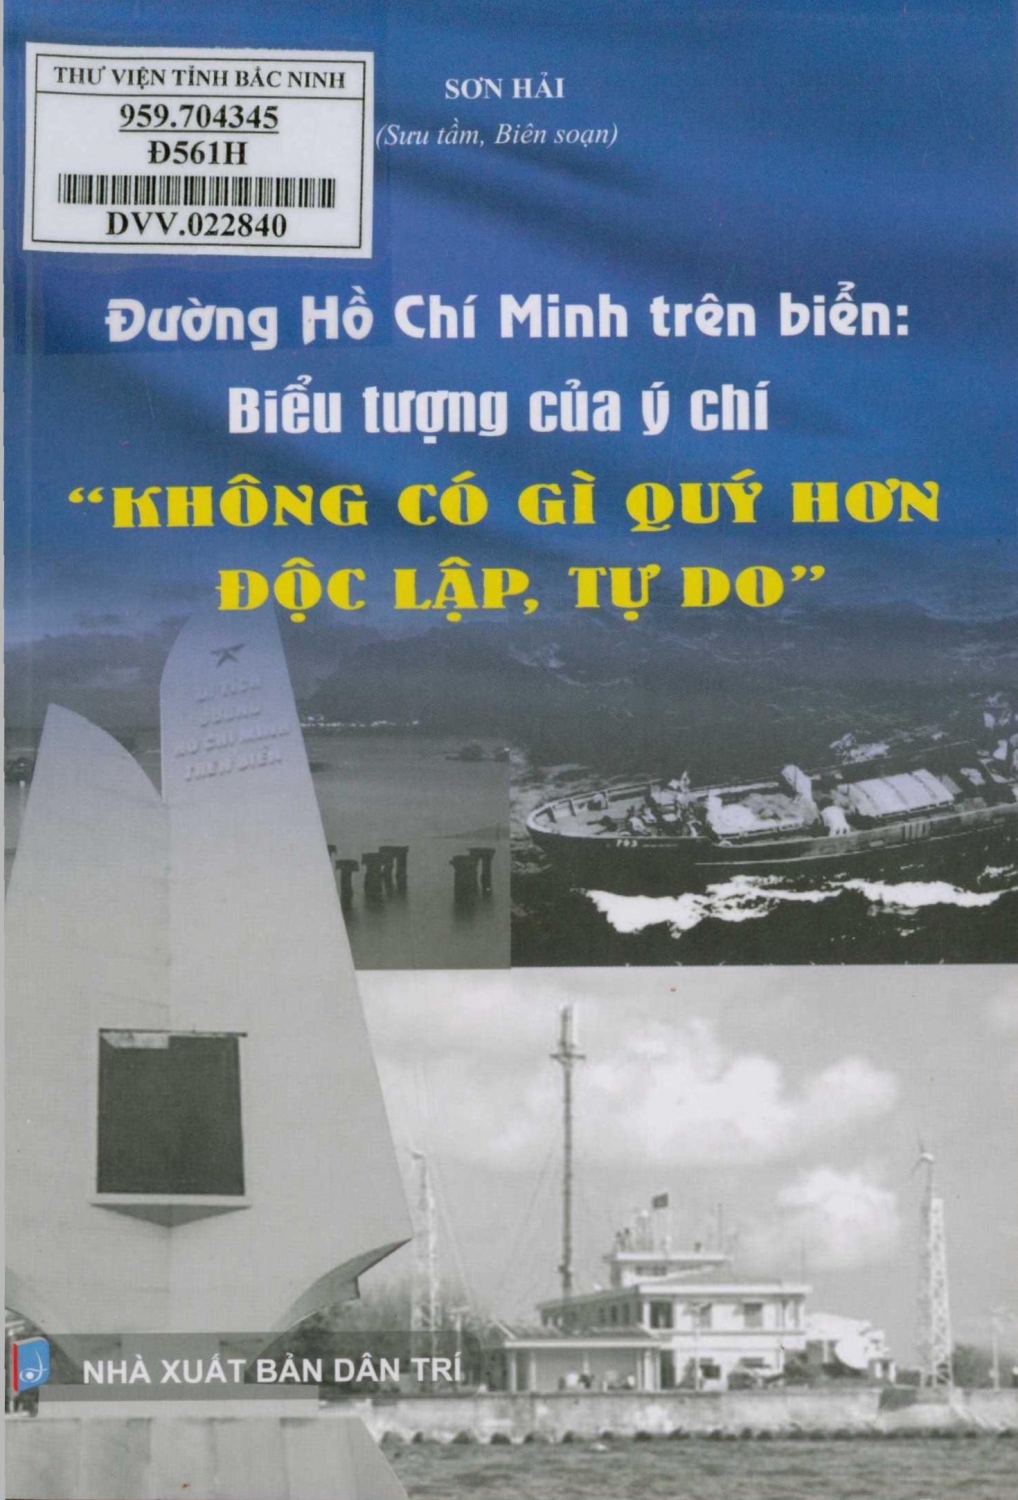 Đường Hồ Chí Minh trên biển: Biểu tượng của ý chí "Không có gì quý hơn độc lập, tự do"